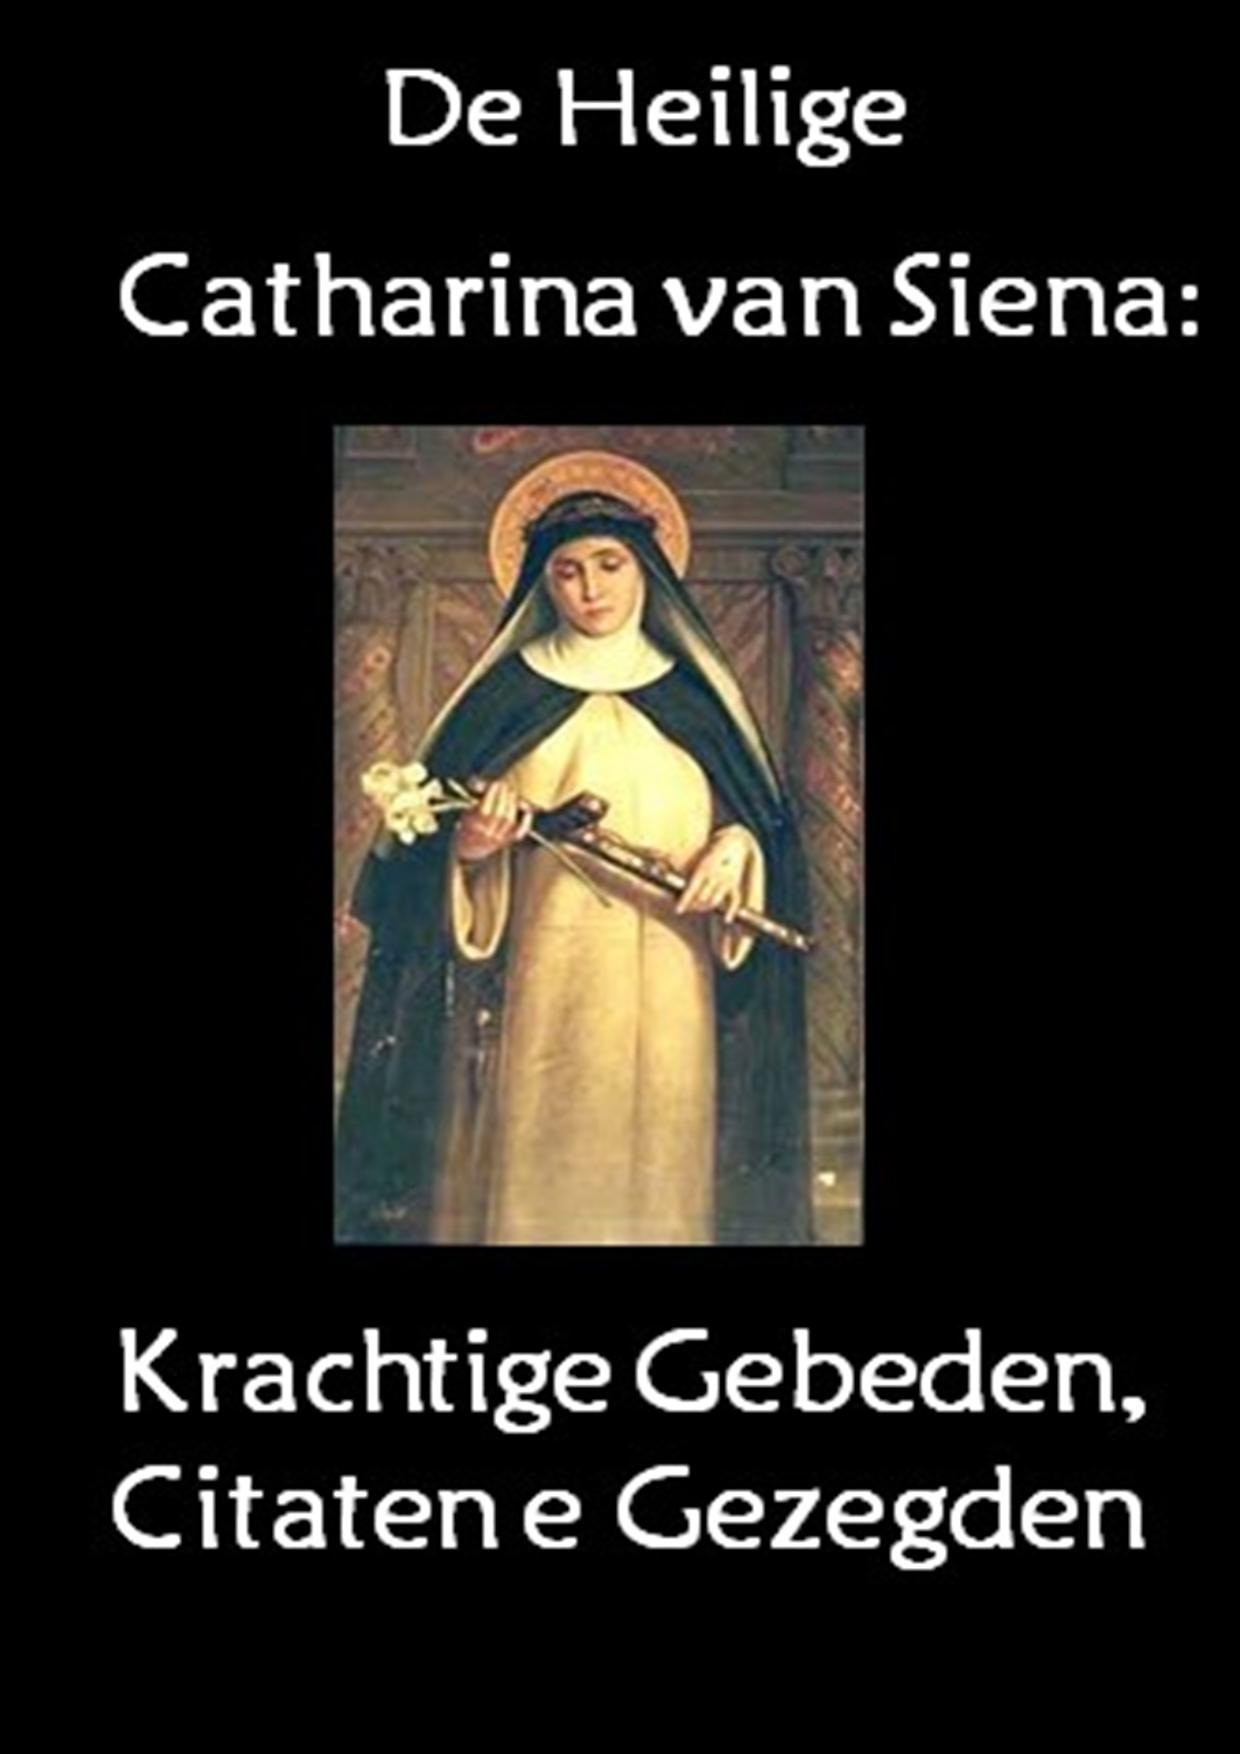 De heilige Catharina van Siena: Krachtige Gebeden, Citaten en Gezegden (Dutch Edition)